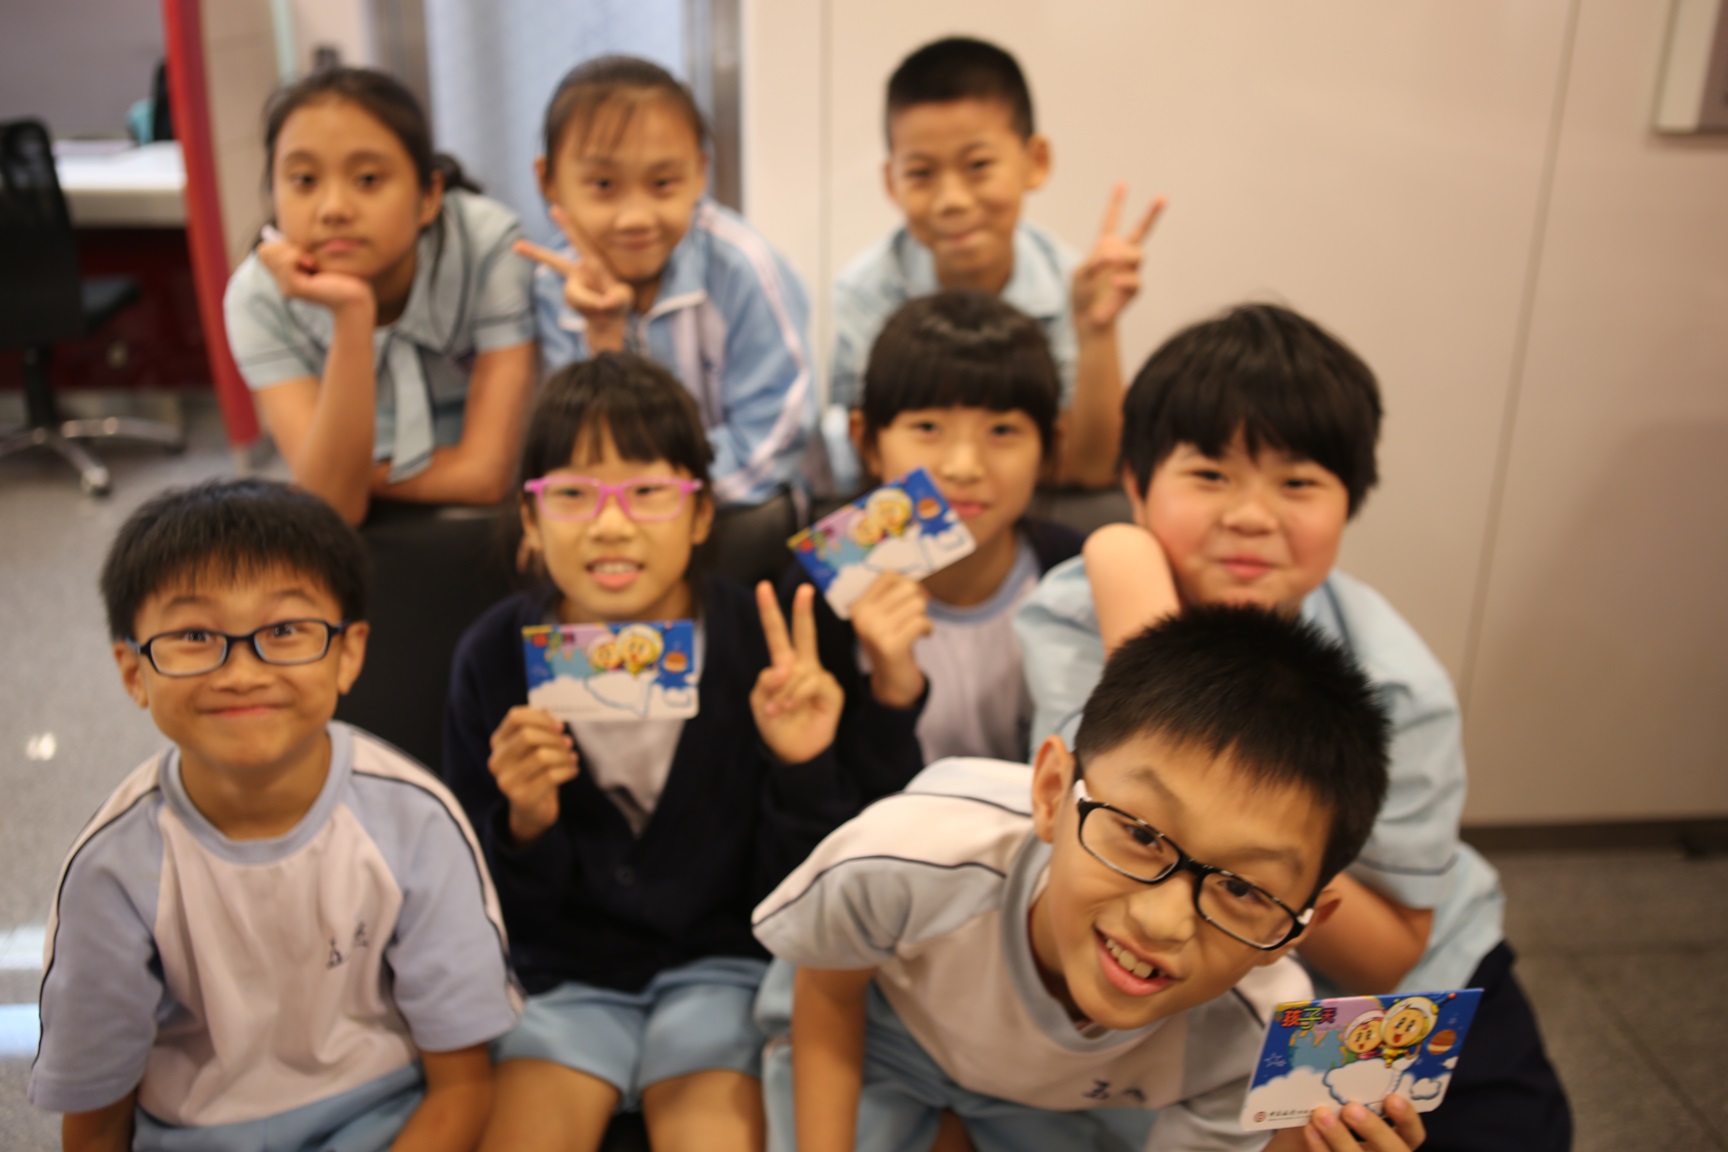 中银香港慈善基金为儿童发展基金学员开立个人储蓄和零存整付账户，让他们能从小学习储蓄理财。